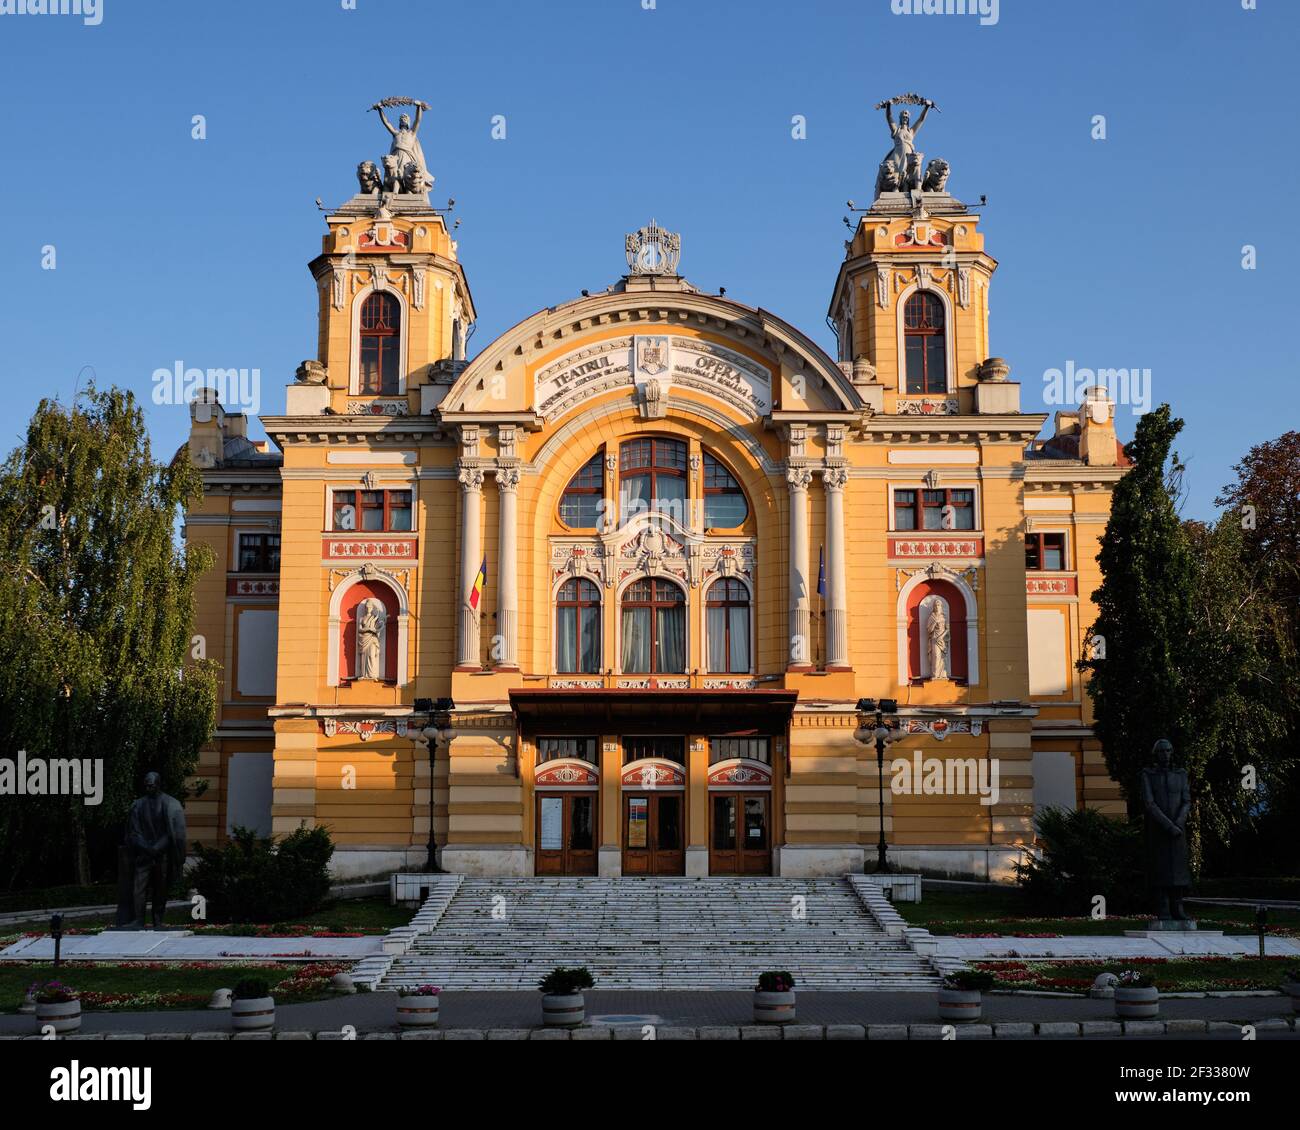 Opéra national roumain, immeuble Cluj-Napoca, dans une architecture néo-baroque Banque D'Images